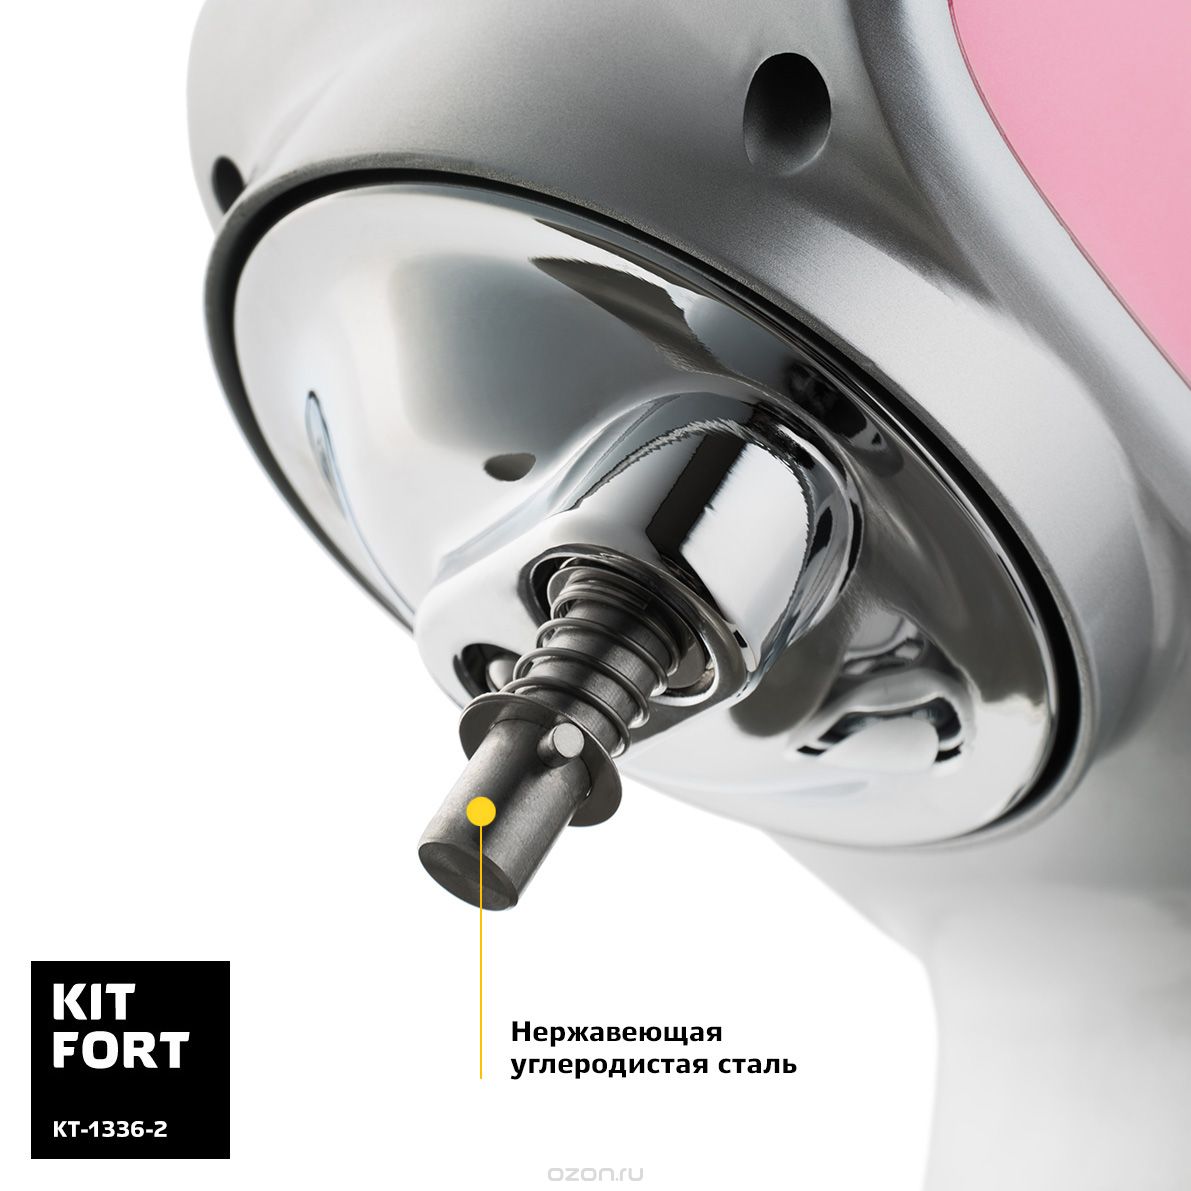  Kitfort -1336-2, Pink 